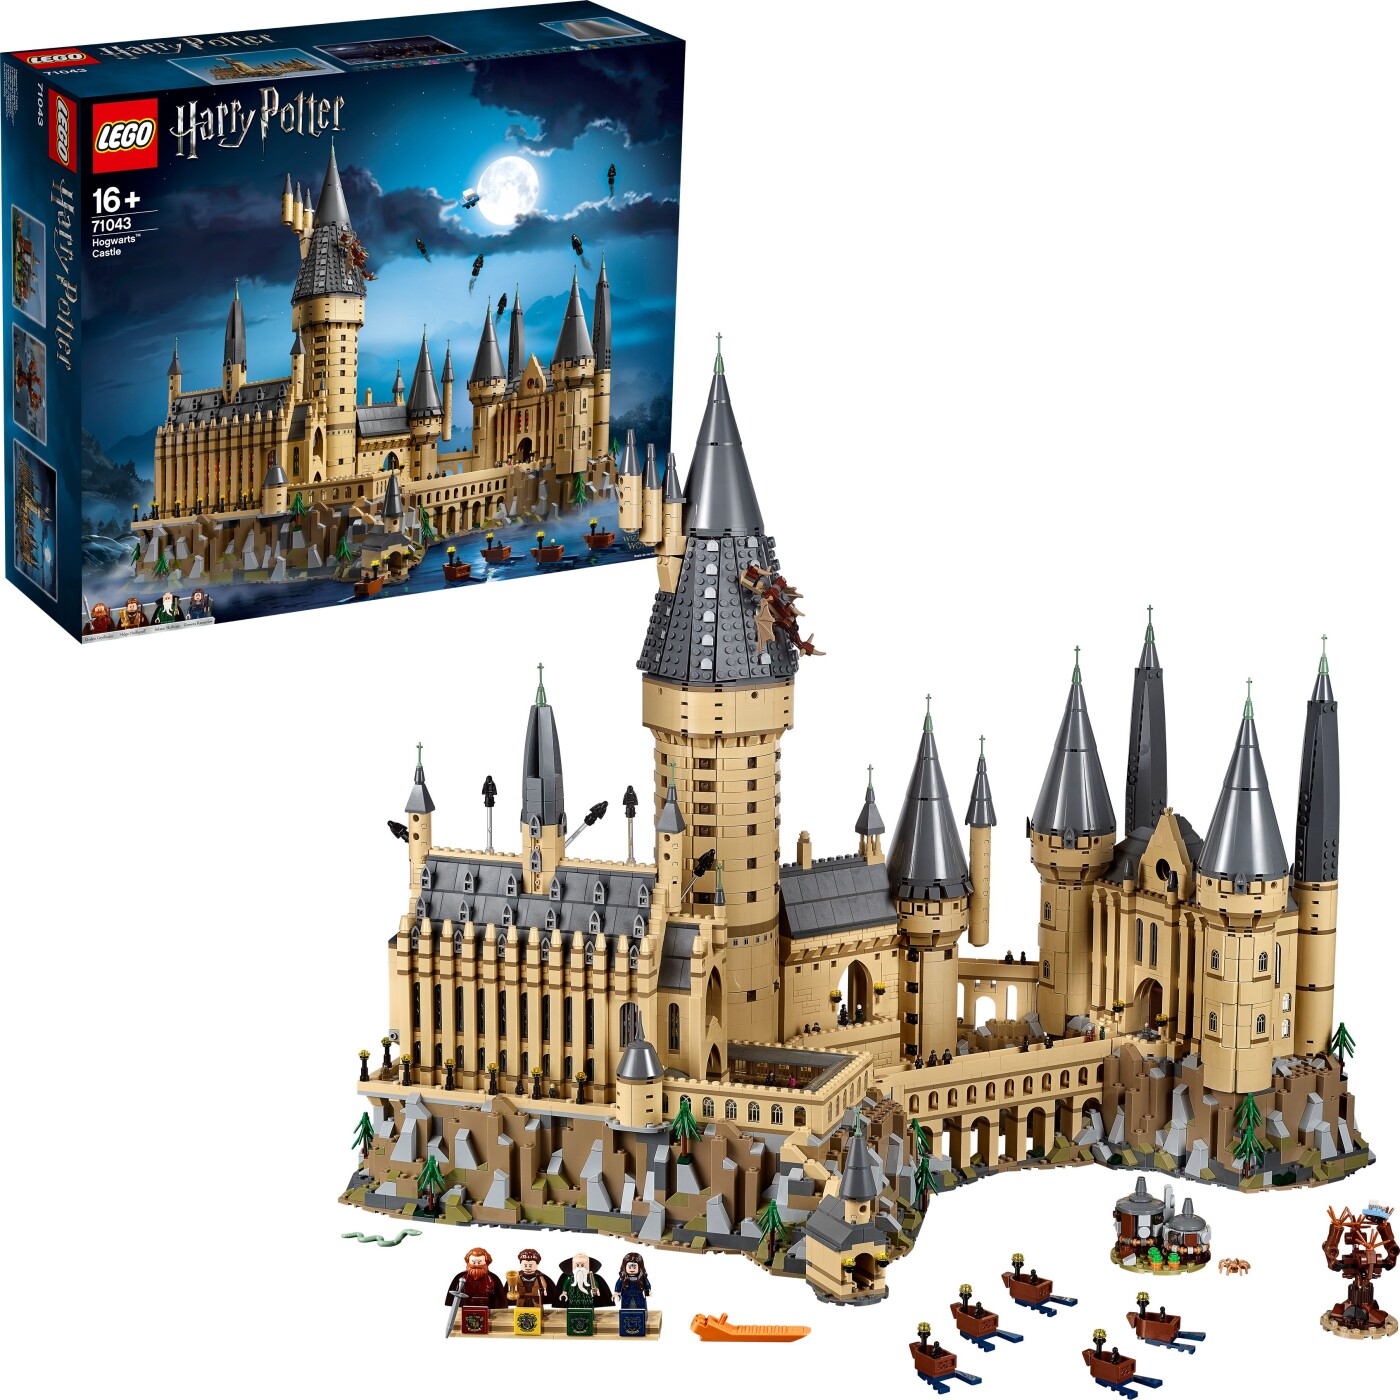 Billede af Lego Harry Potter - Hogwarts Slottet - 71043